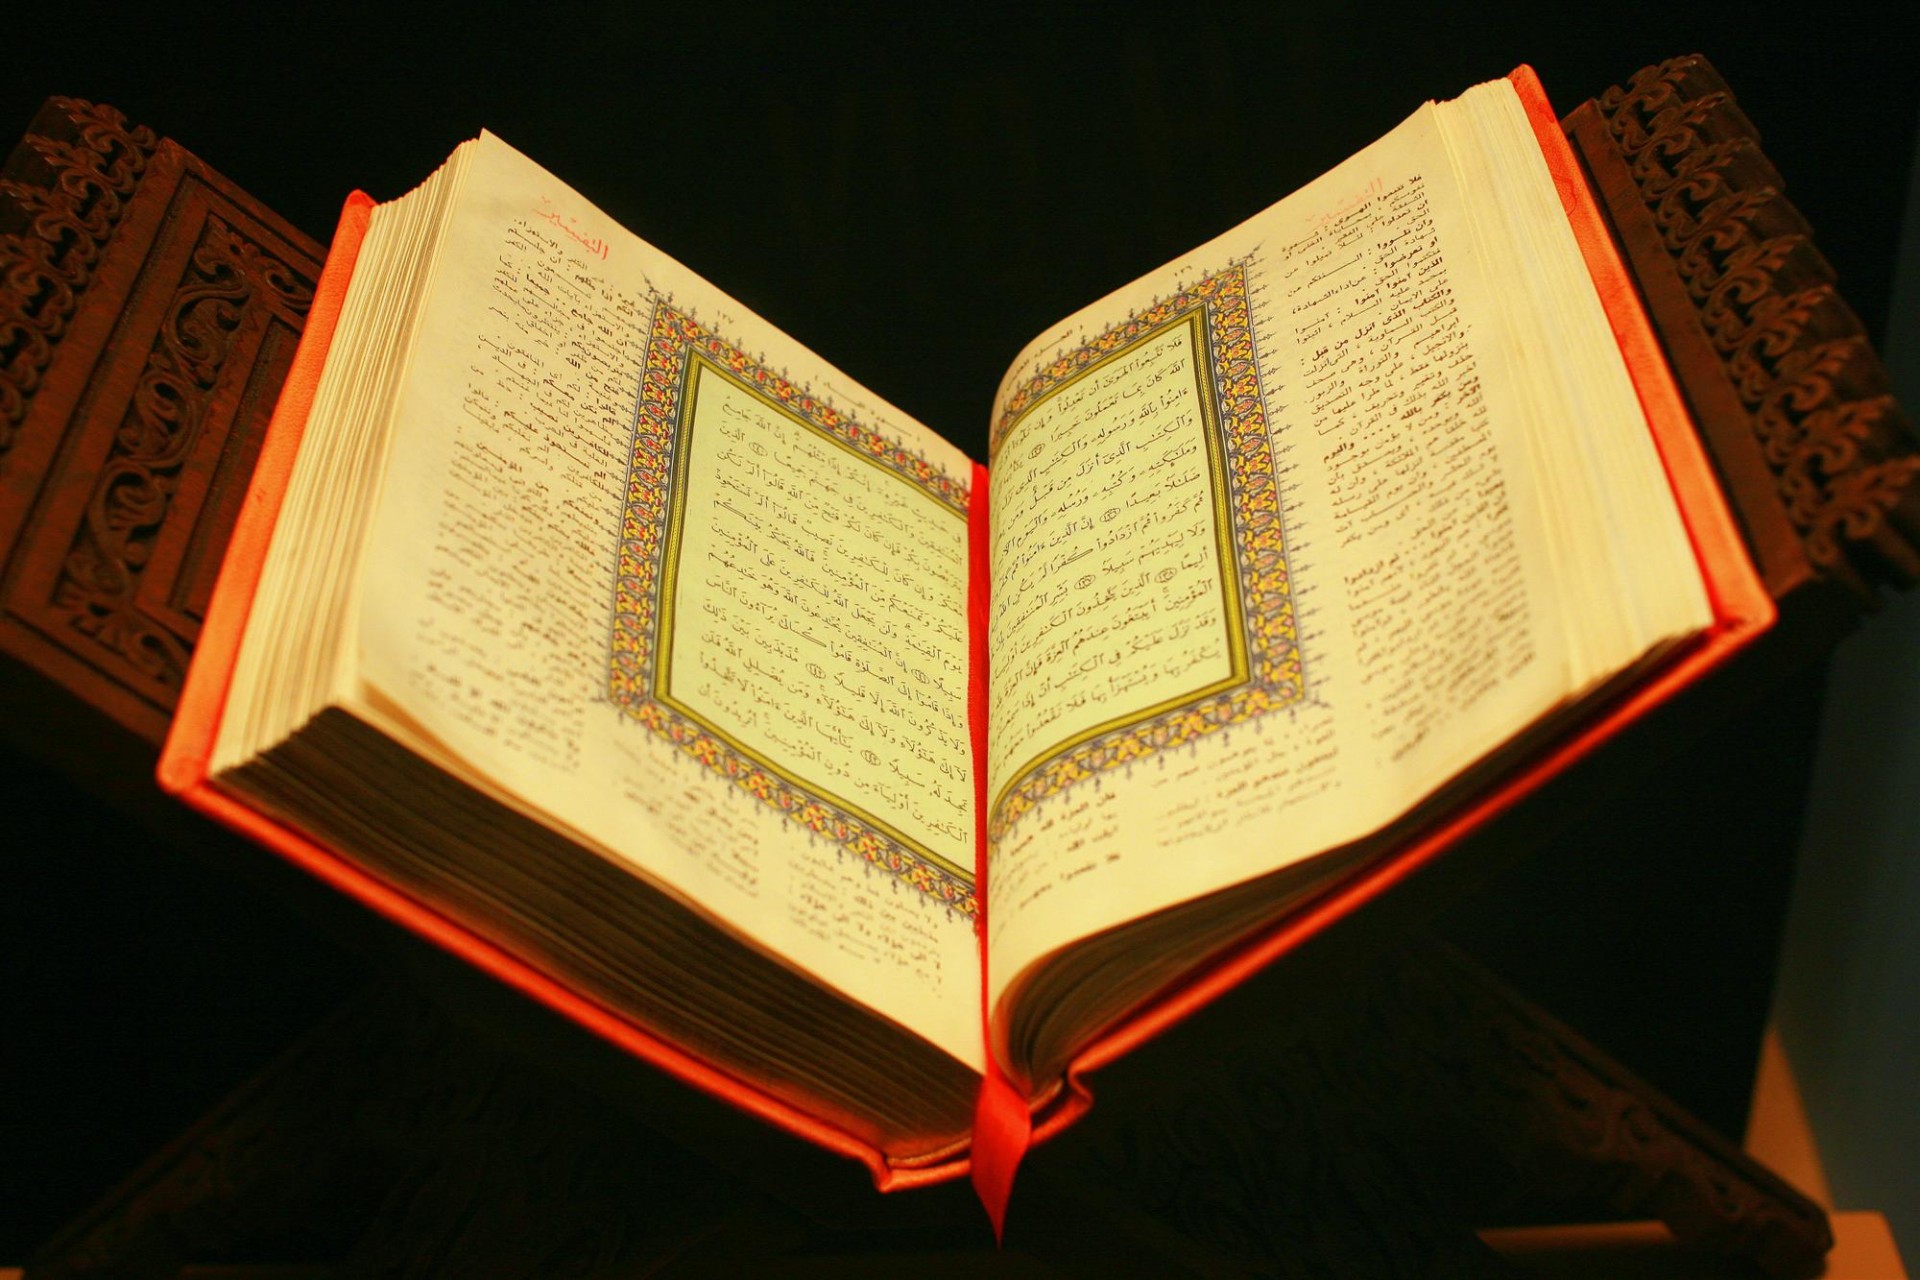 Koran at the Museum of Natural History, NY. Source: Wikimedia Commons, CC BY-SA 4.0.